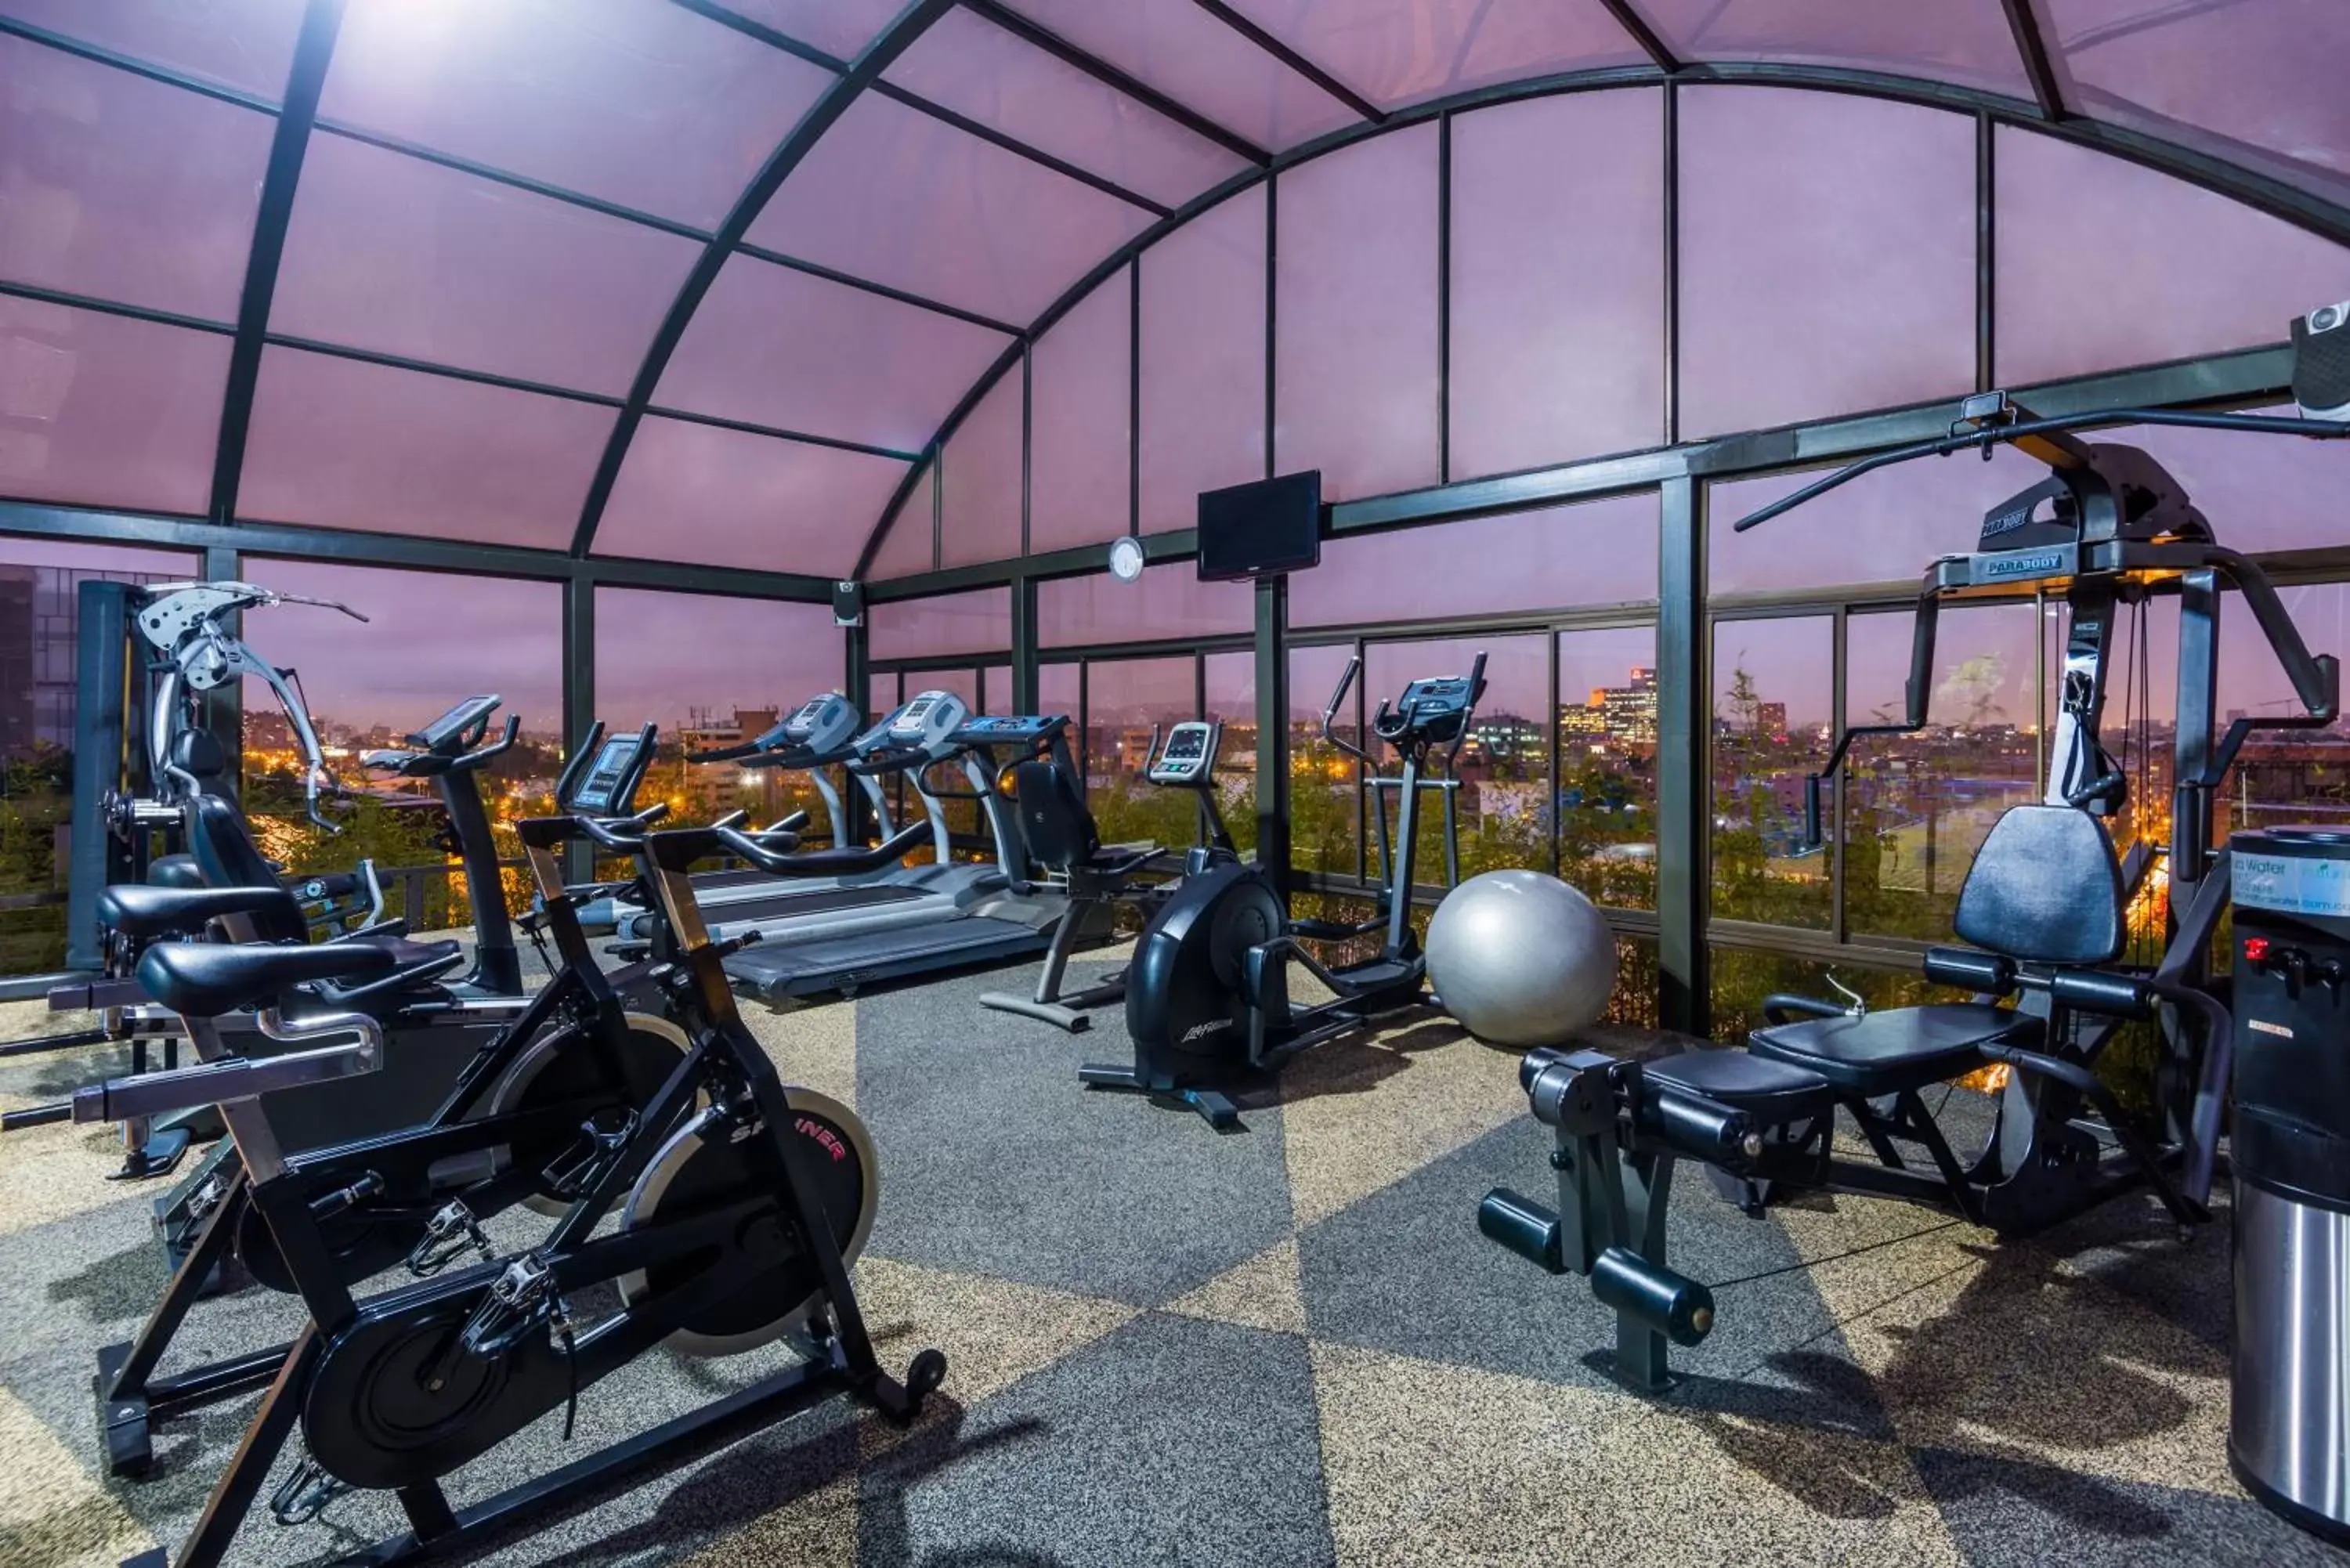 Fitness centre/facilities, Fitness Center/Facilities in Cosmos 100 Hotel & Centro de Convenciones - Hoteles Cosmos